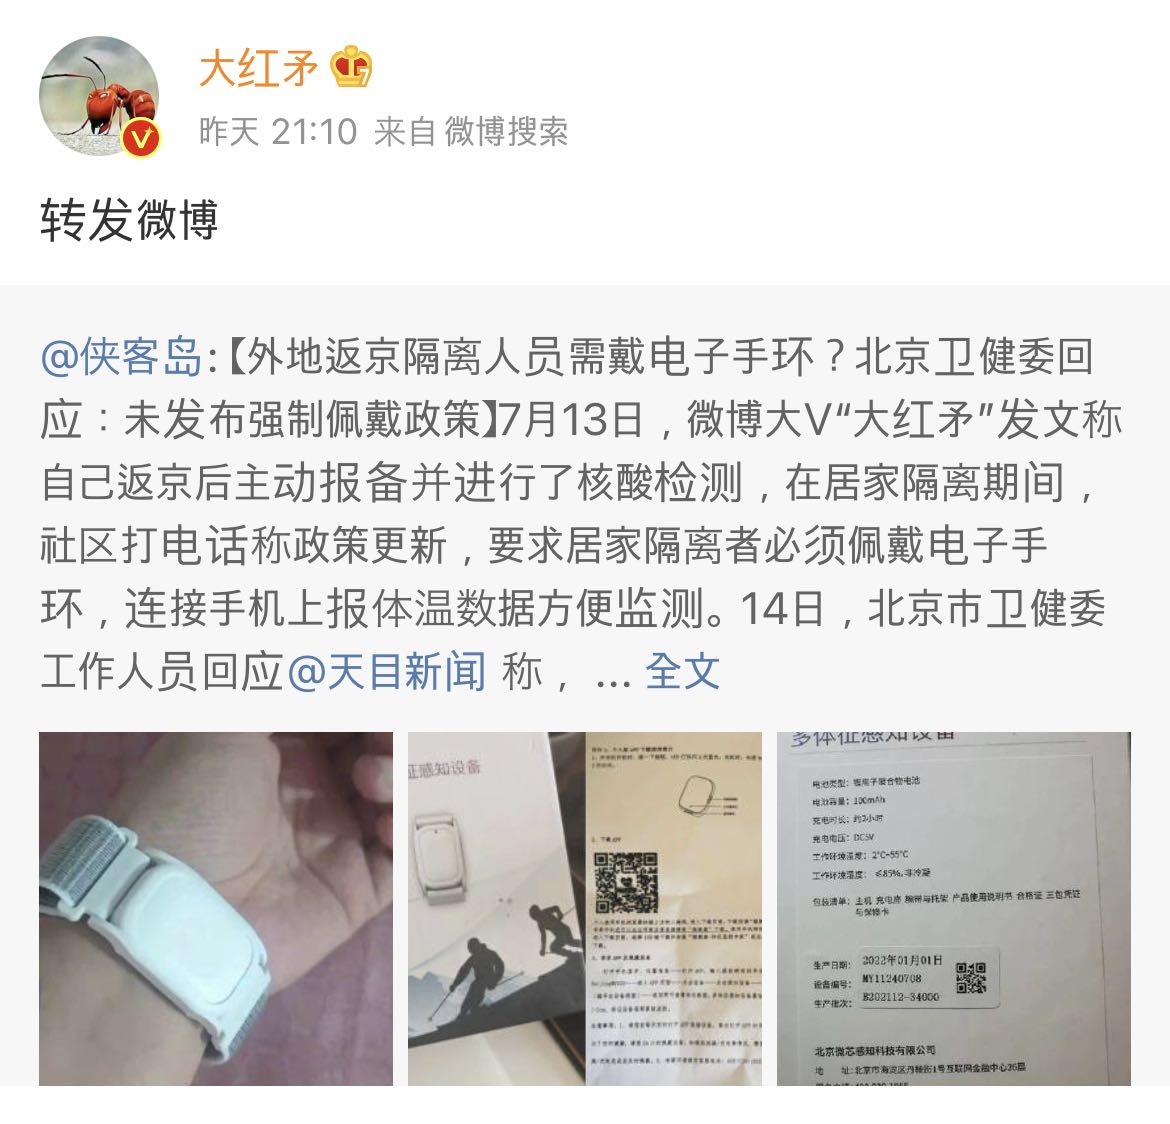 최초 ‘방역 팔찌’ 문제를 폭로한 네티즌의 원문은 웨이보에서 사라졌다. 대신 이 네티즌은 자신의 글을 인용한 신문 기사를 계정에 올려놓았다. (출처: 웨이보)